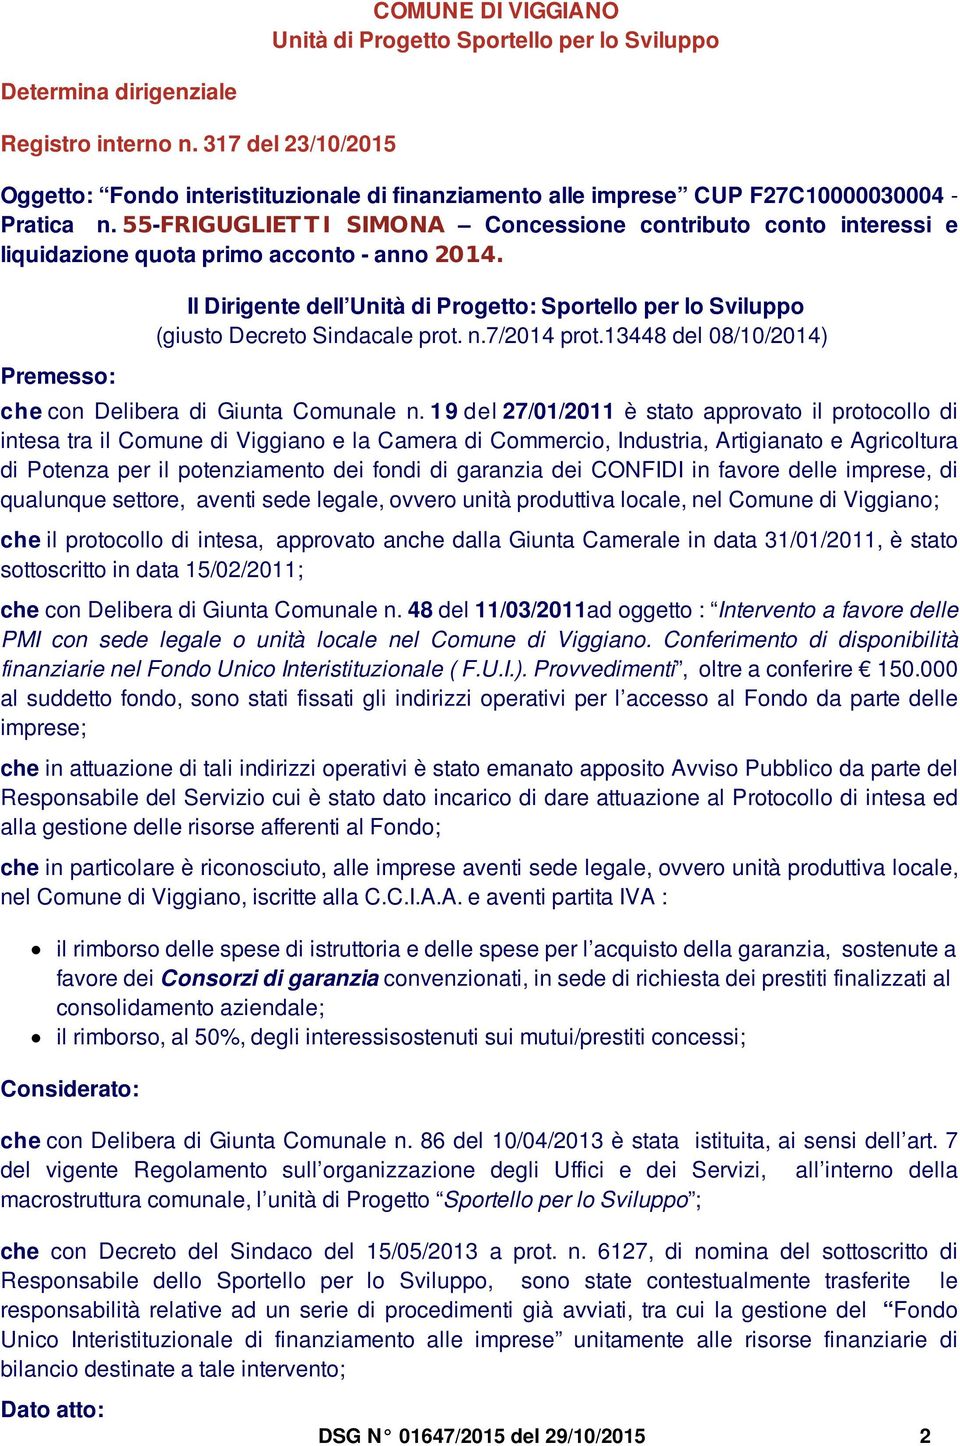 55-FRIGUGLIET T I SIMONA Concessione contributo conto interessi e liquidazione quota rimo acconto - anno 2014.